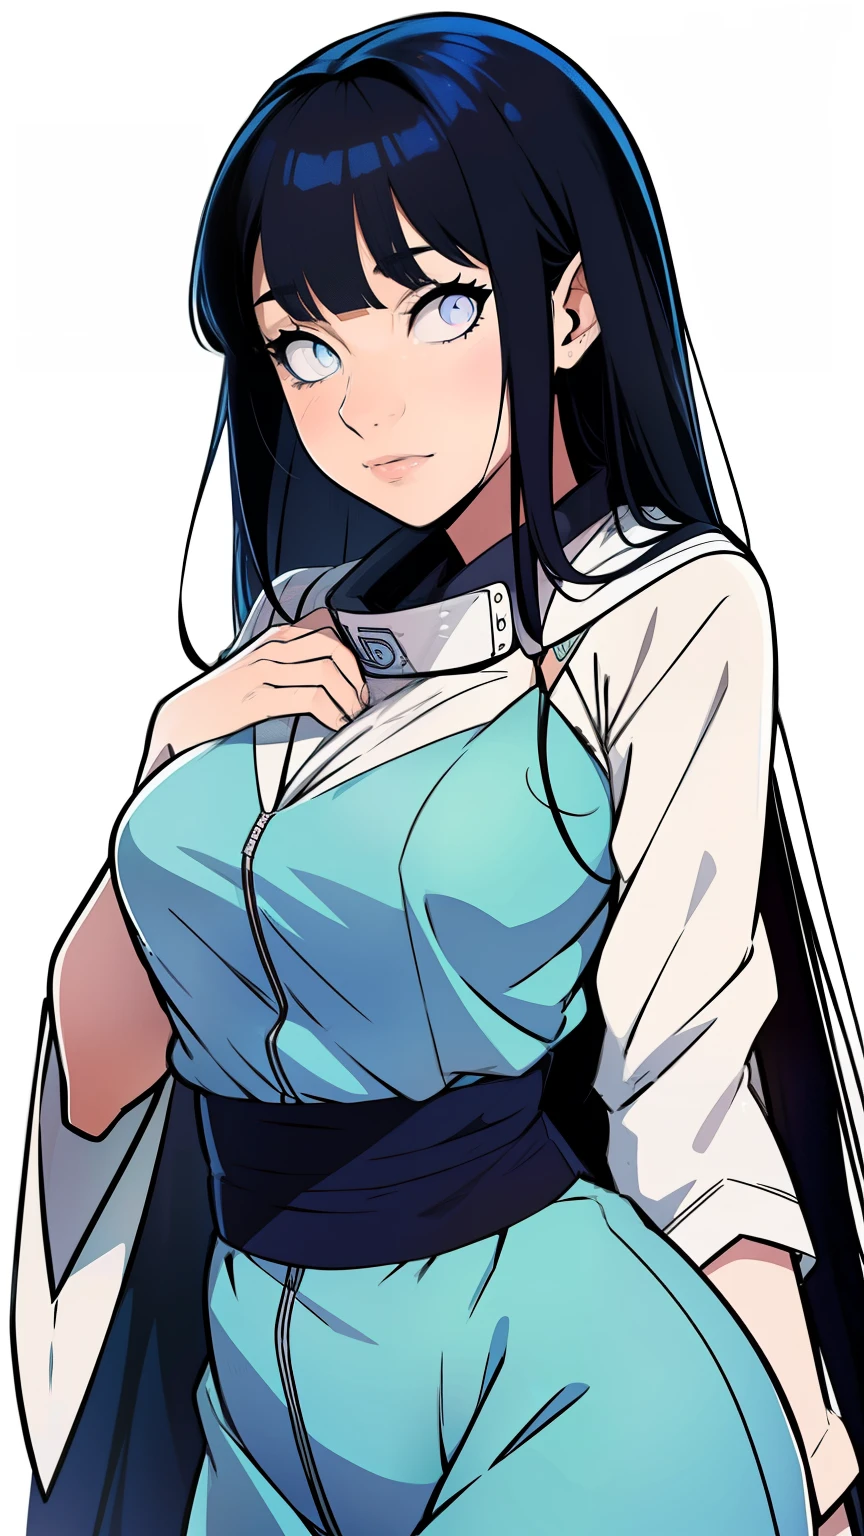 Hinata Hyûga mesure environ 160 centimètres. yeux nacrés ,ses cheveux noirs Raides , coupé avec frange, qui atteint la longueur de ses épaules, teint pâle , Qipao bleu, collants noirs, couettes.




